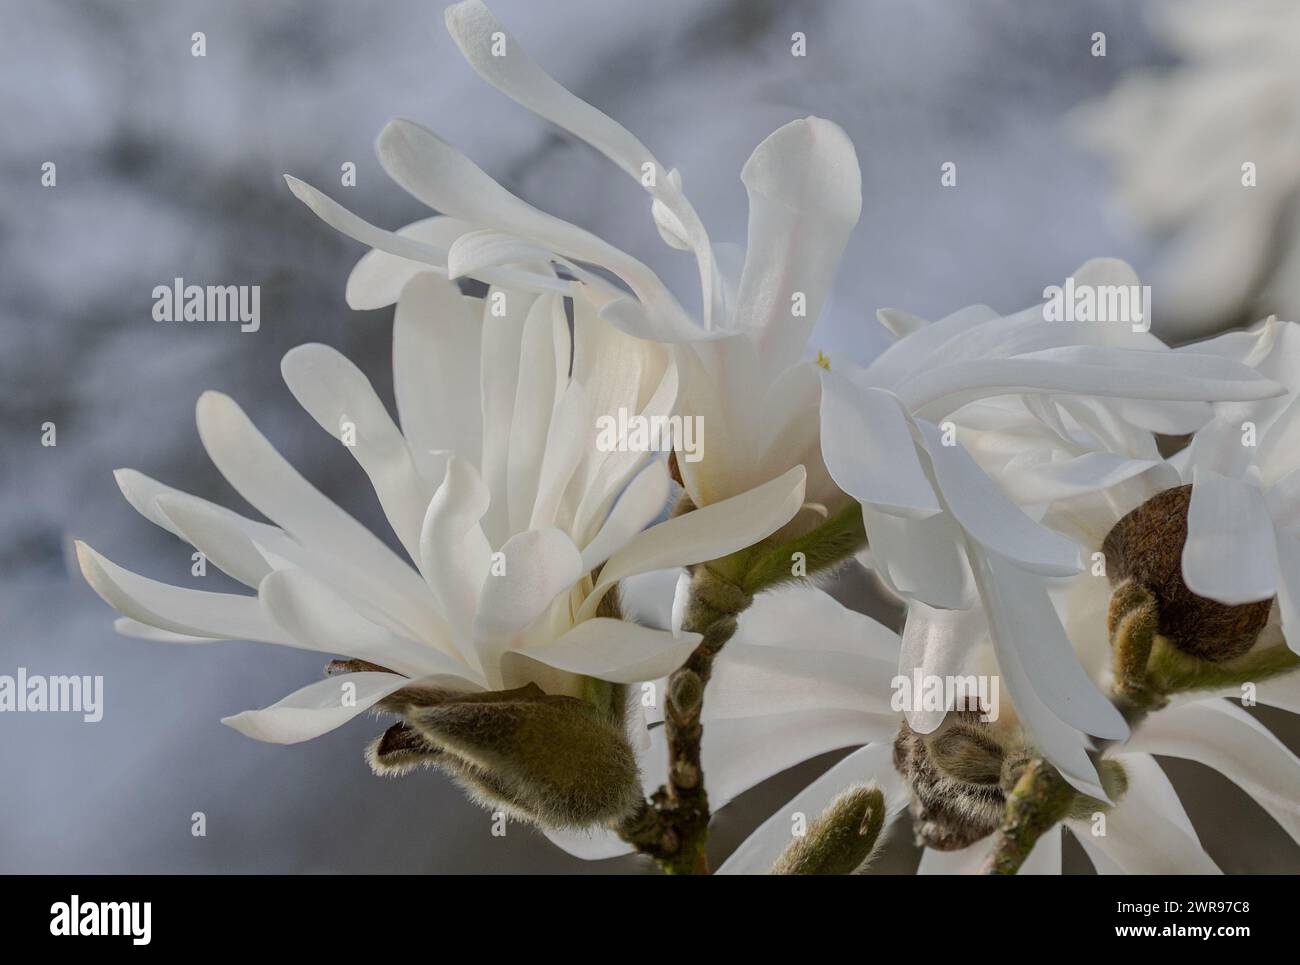 Close up of Star Magnolias (Magnolia stellata) against a defocused background Stock Photo